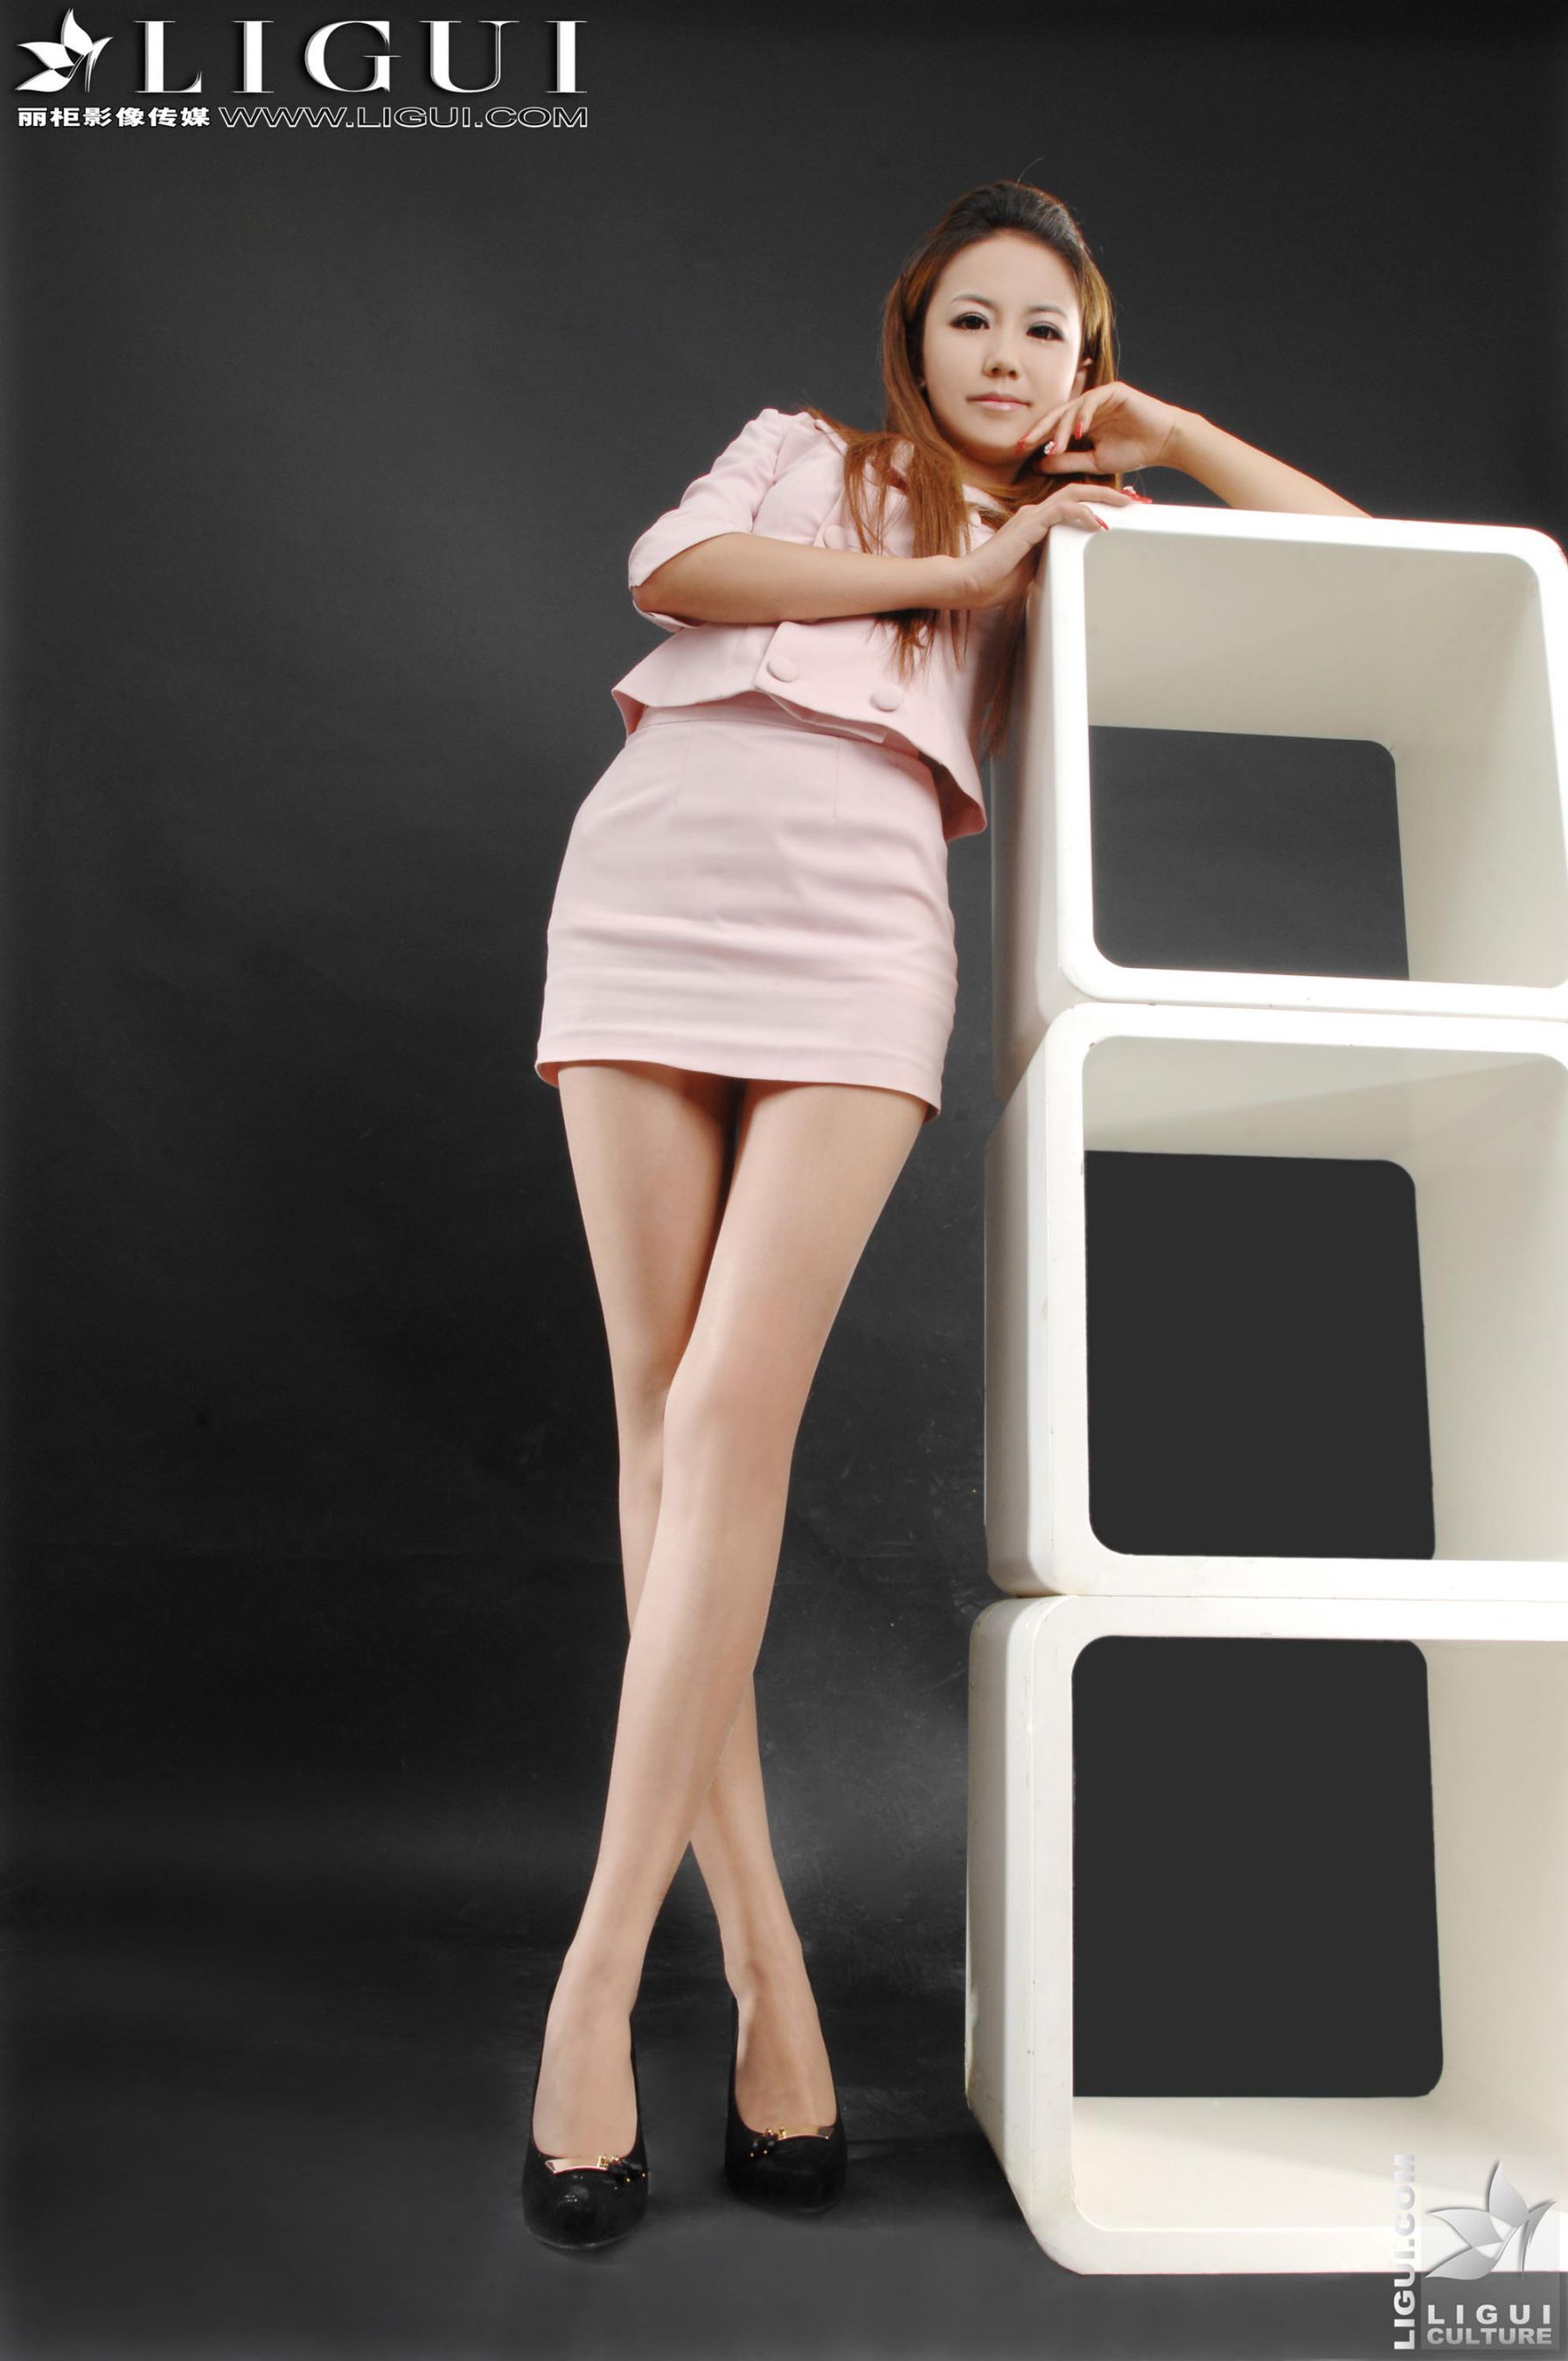 Model 可馨《粉色丽人丝足》上下合集 [丽柜LiGui] 美腿玉足写真图片  第25张